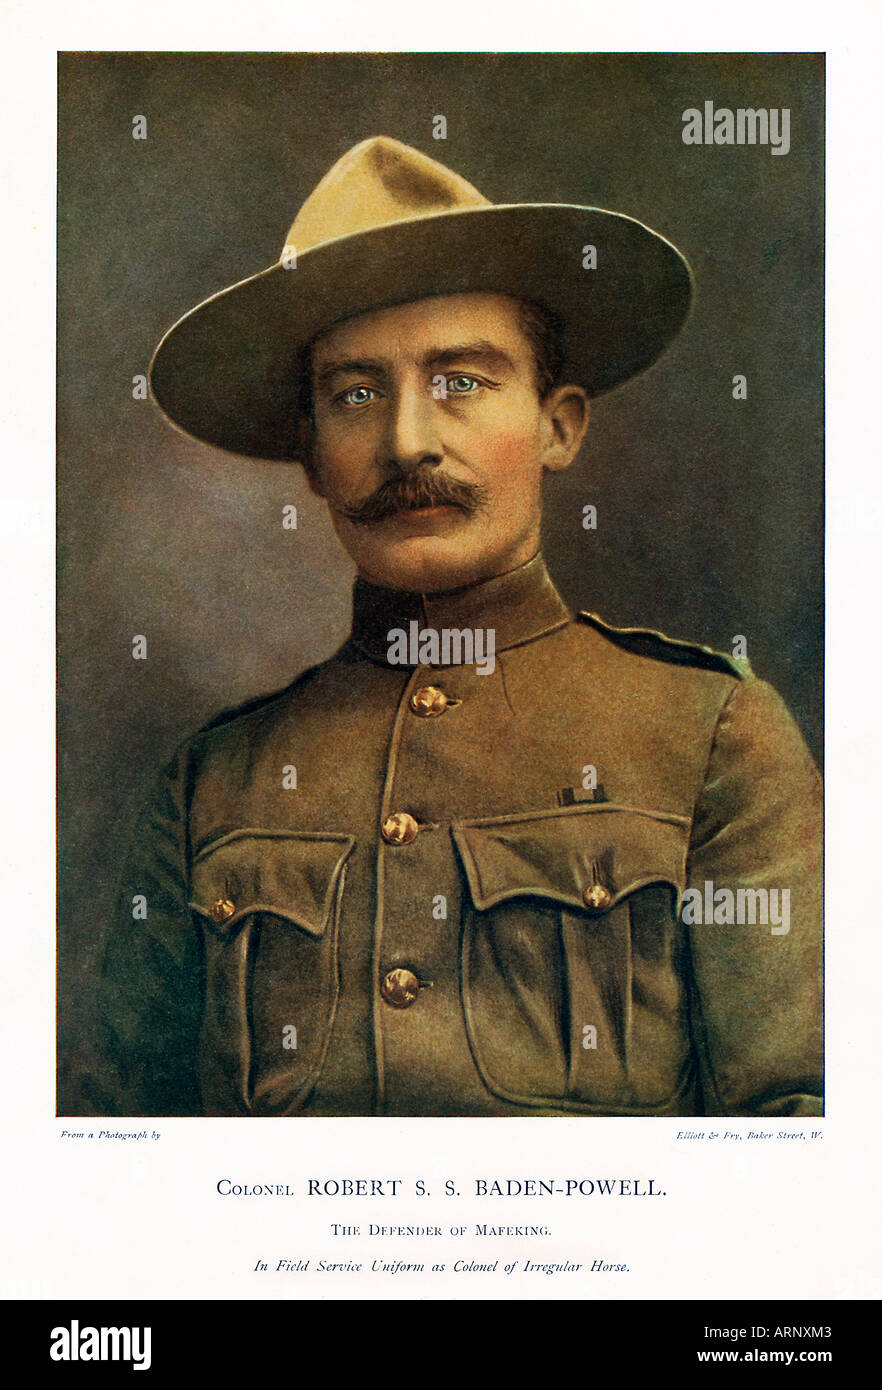 Robert Baden Powell il famoso fondatore del Movimento Scout e il difensore di Mafeking nella guerra boera. Scautismo per ragazzi Foto Stock